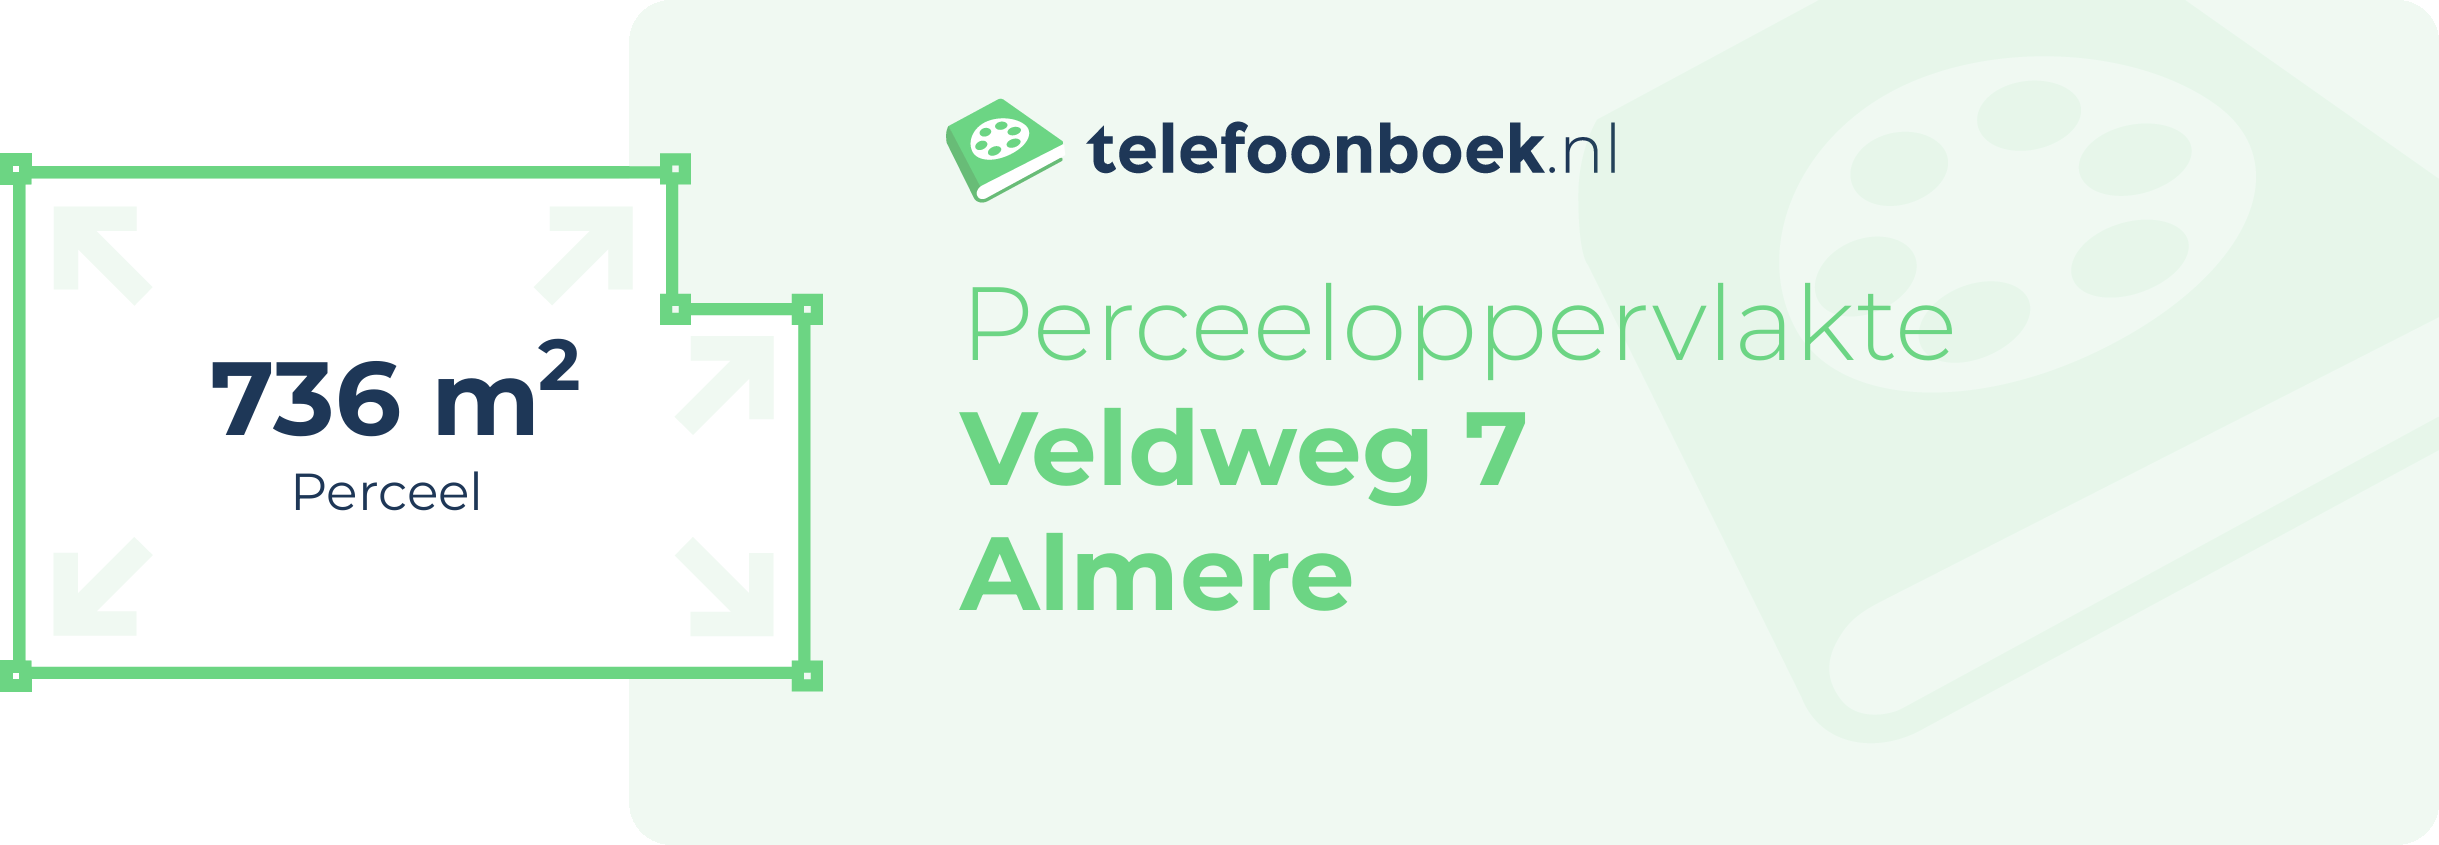 Perceeloppervlakte Veldweg 7 Almere